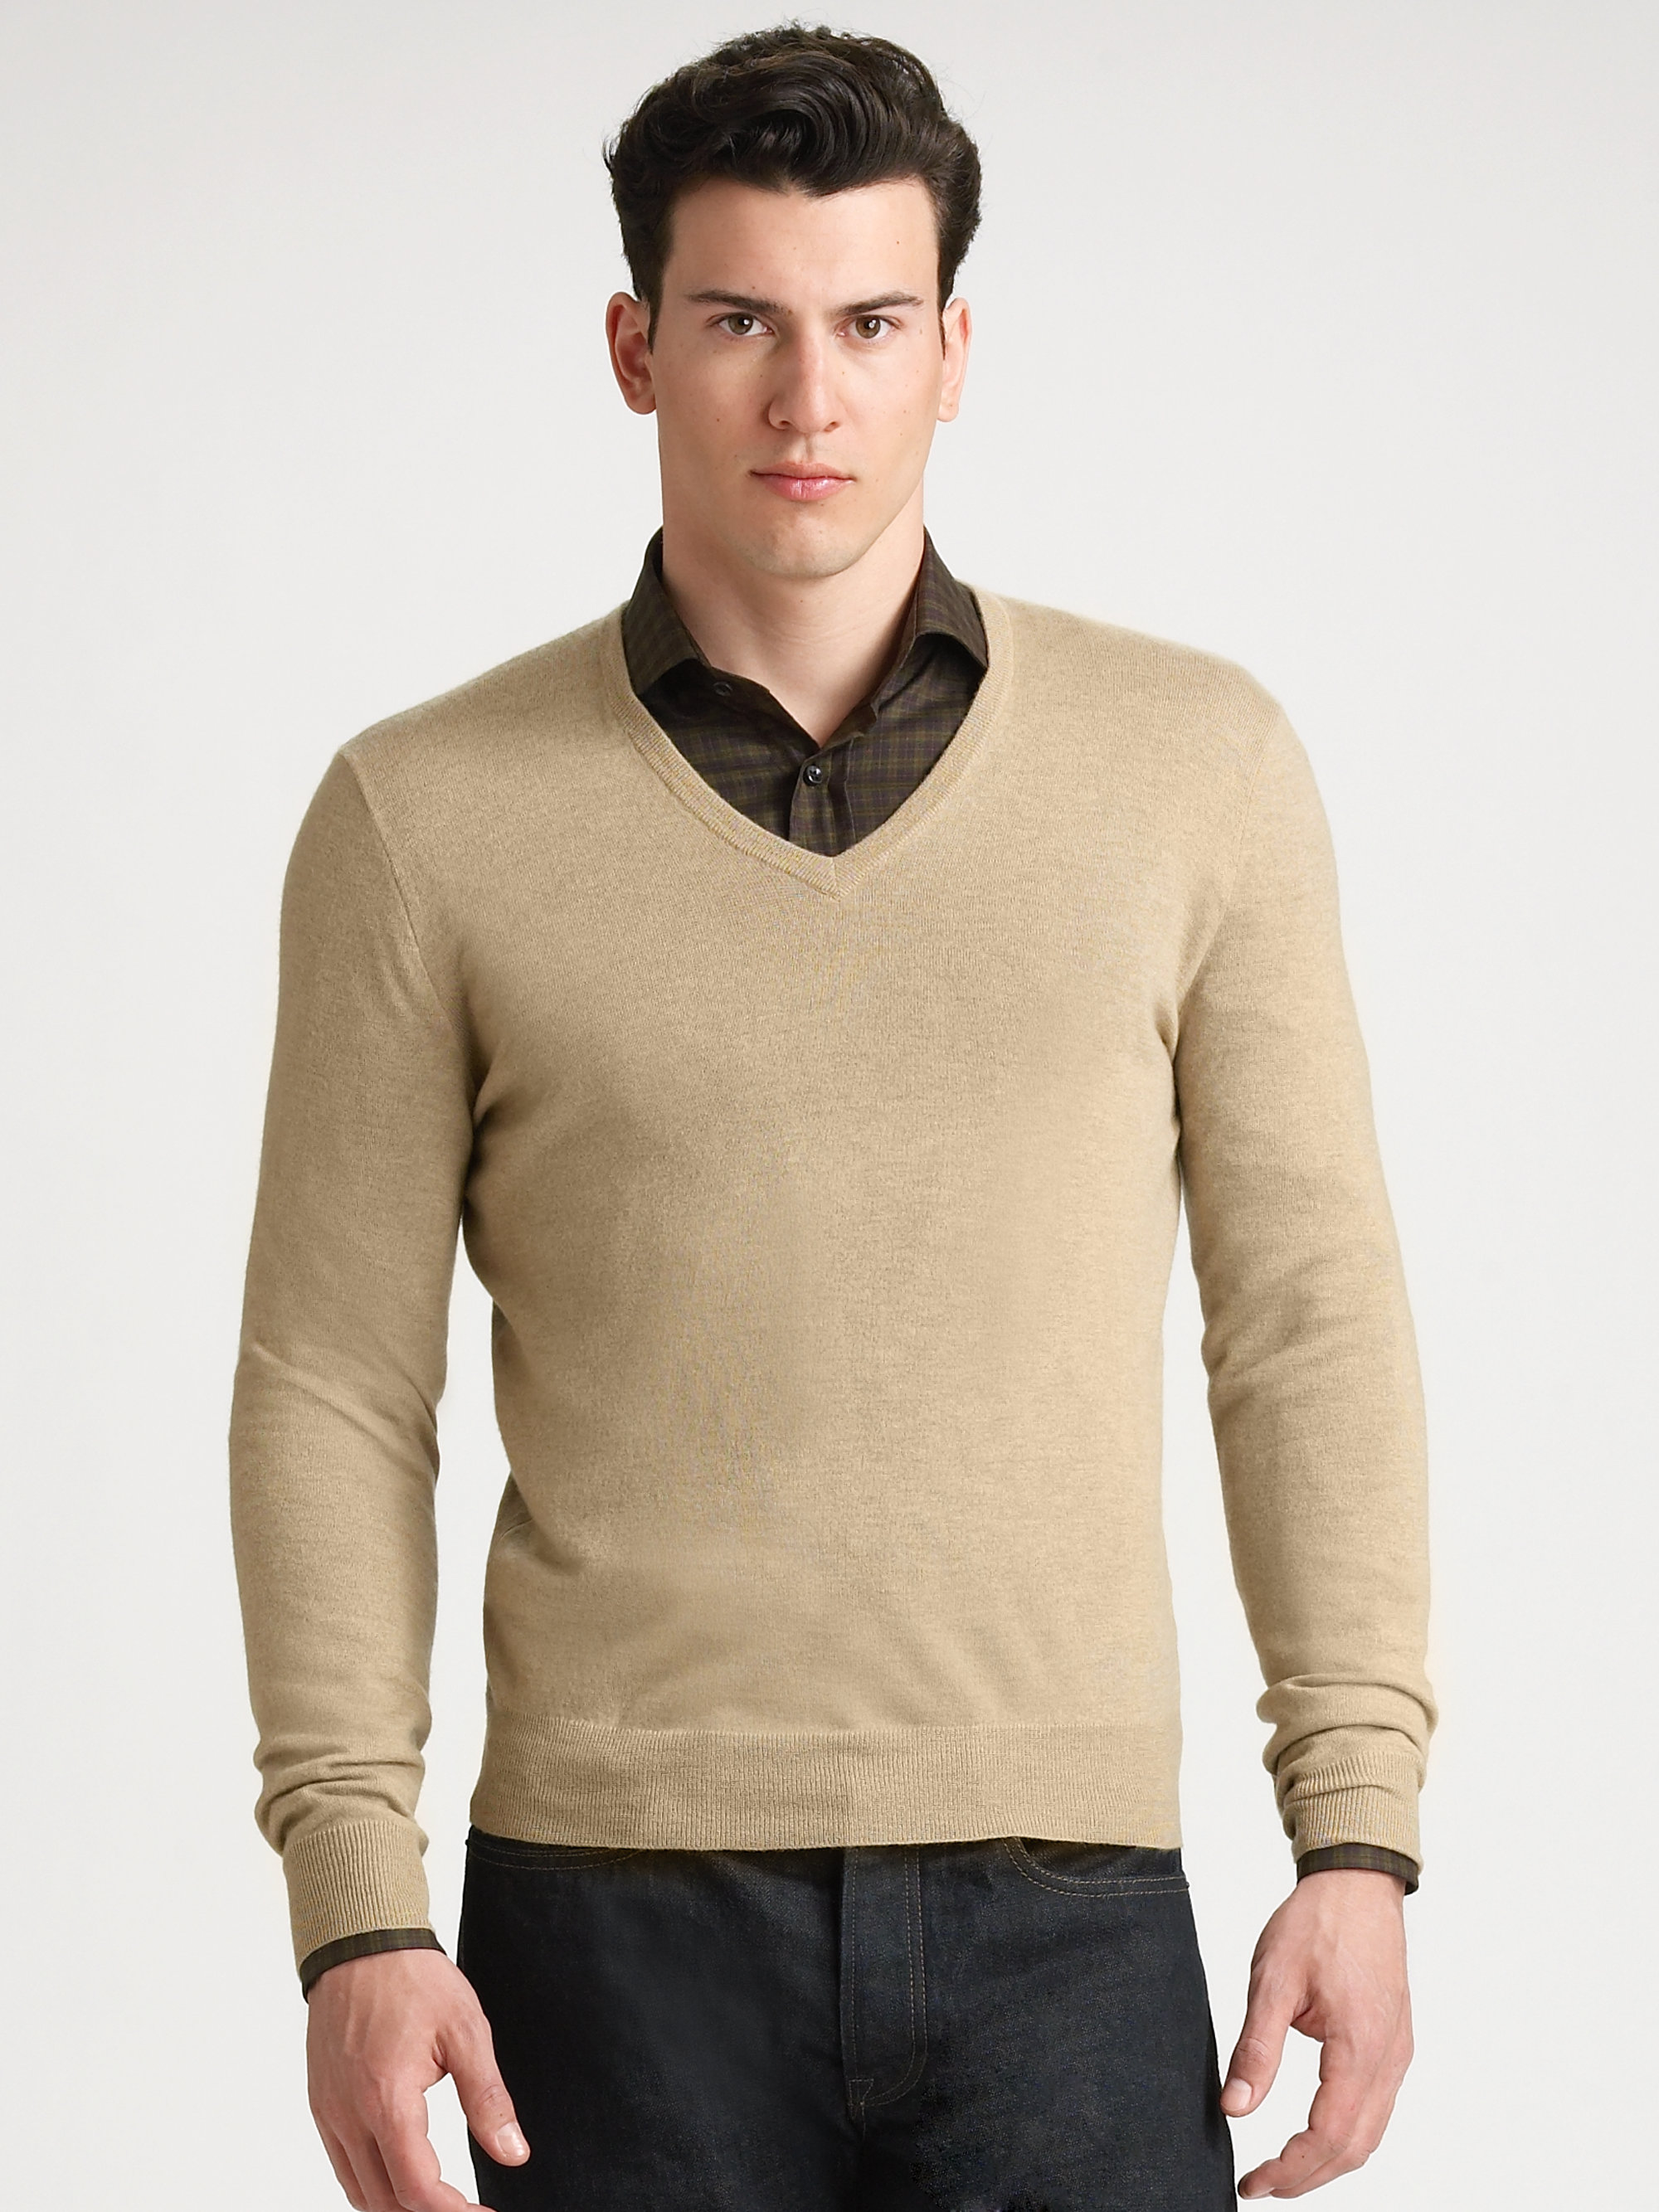 Lyst - Ralph Lauren Black Label Cashmere V-neck Sweater in Natural for Men